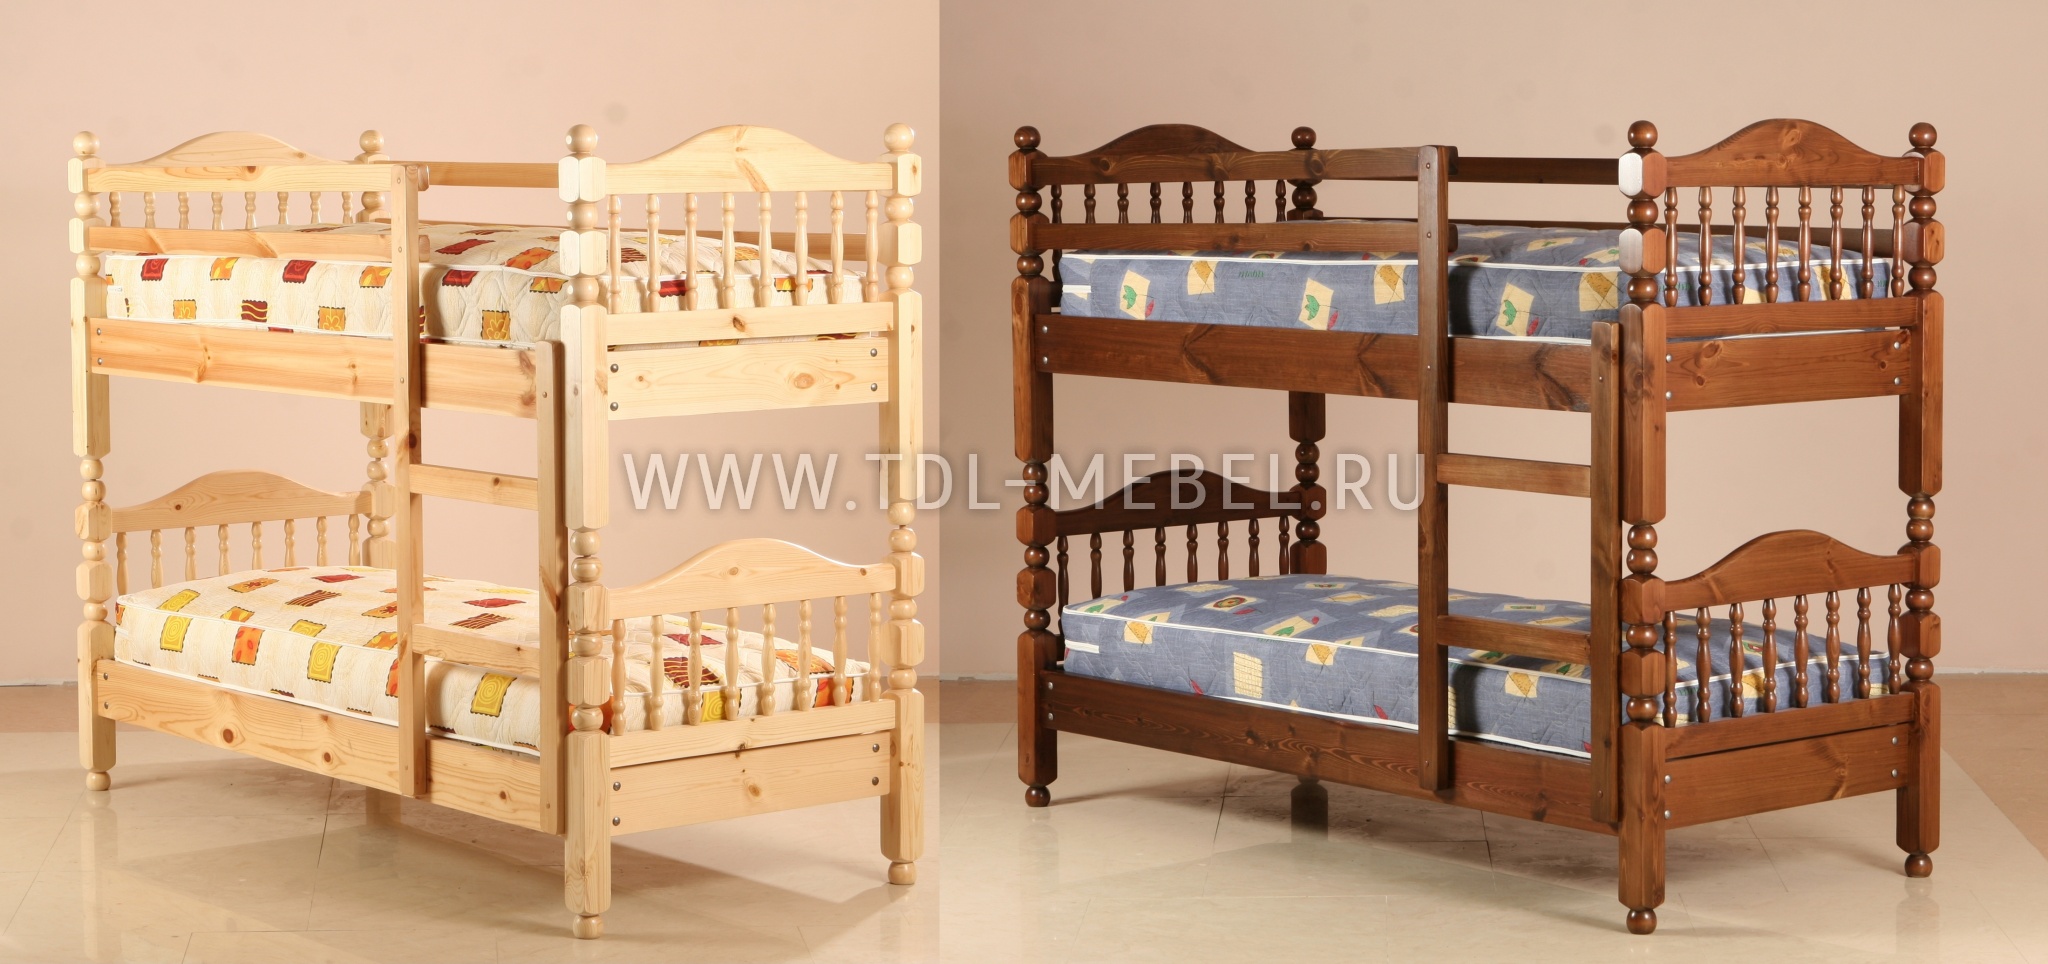 Кованная детская двухъярусная кровать